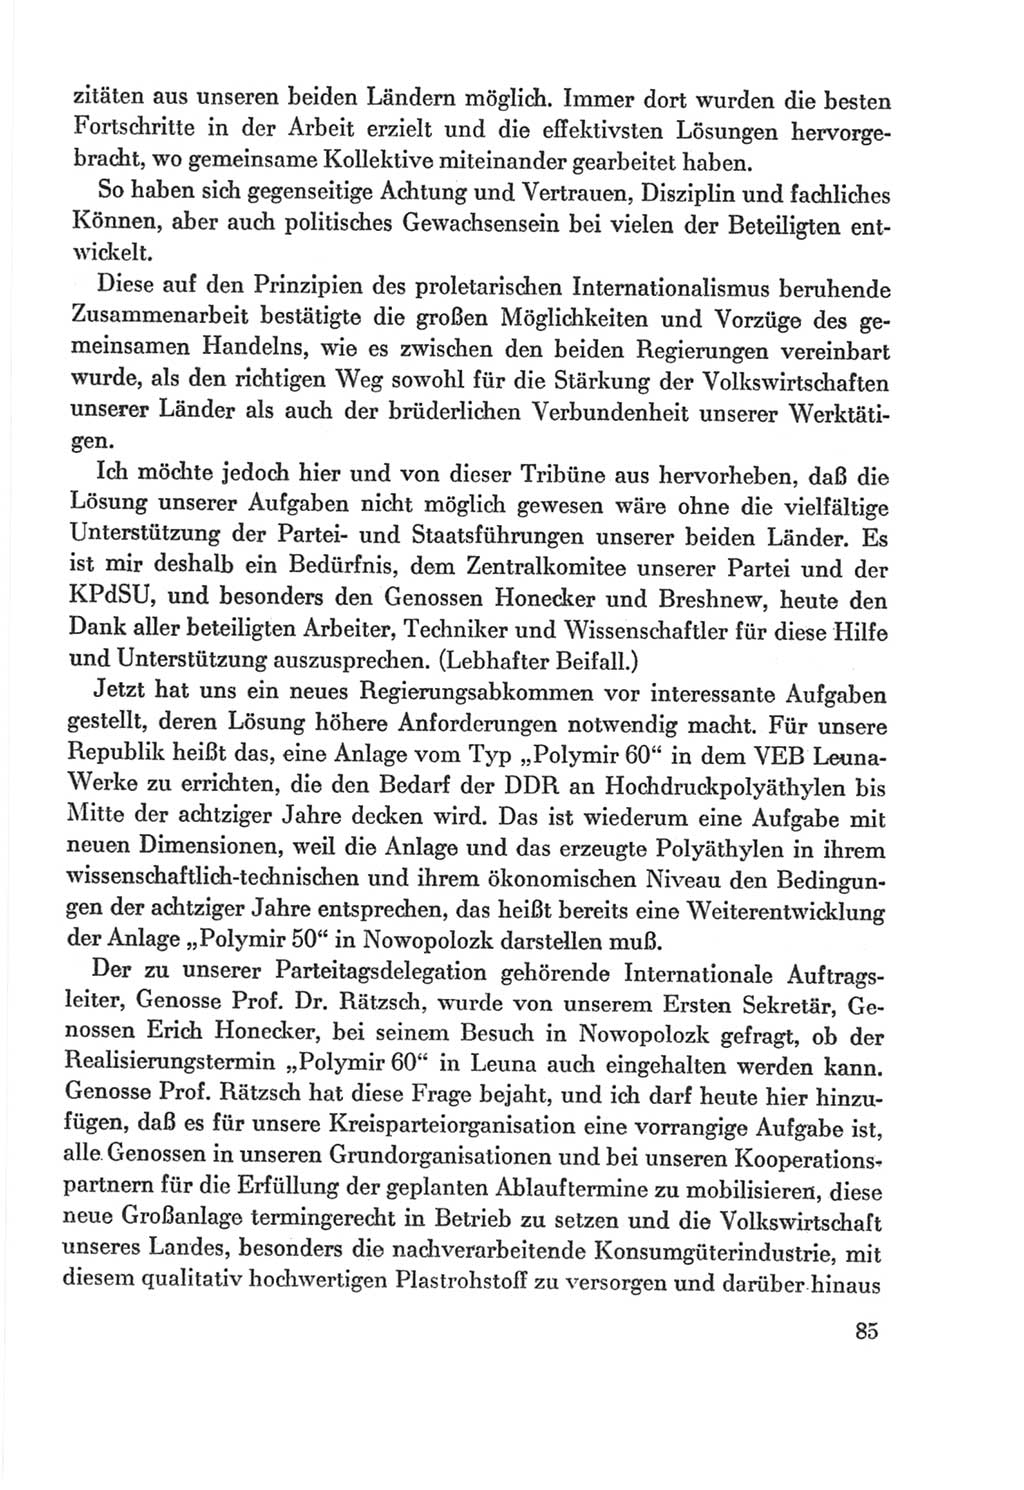 Protokoll der Verhandlungen des Ⅸ. Parteitages der Sozialistischen Einheitspartei Deutschlands (SED) [Deutsche Demokratische Republik (DDR)] 1976, Band 2, Seite 85 (Prot. Verh. Ⅸ. PT SED DDR 1976, Bd. 2, S. 85)